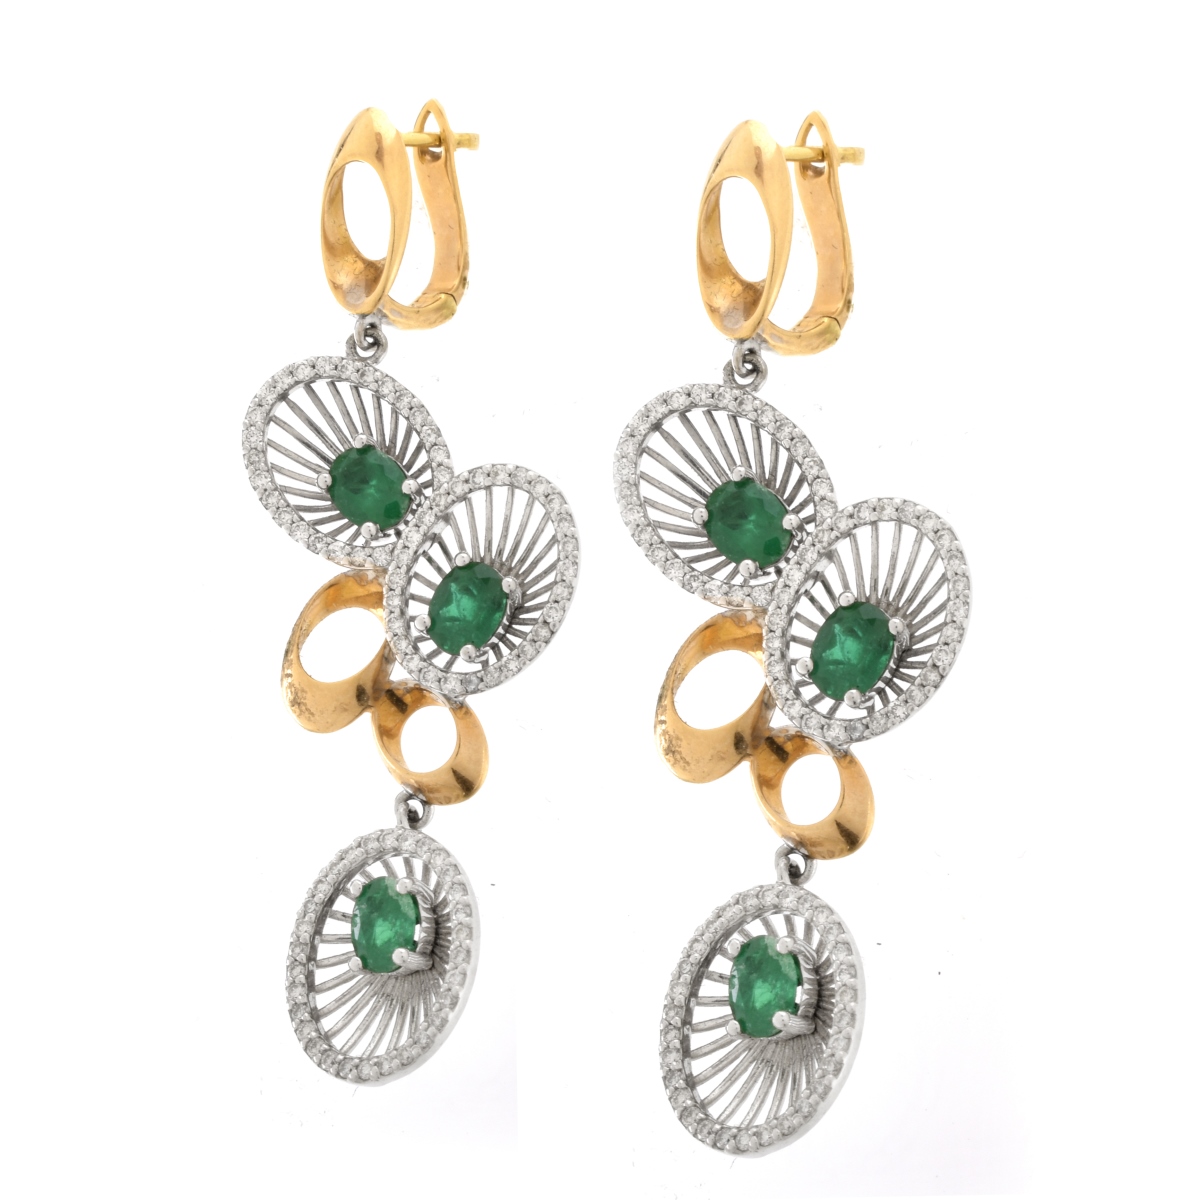 Emerald, Diamond and 18K Earrings. - Image 2 of 5